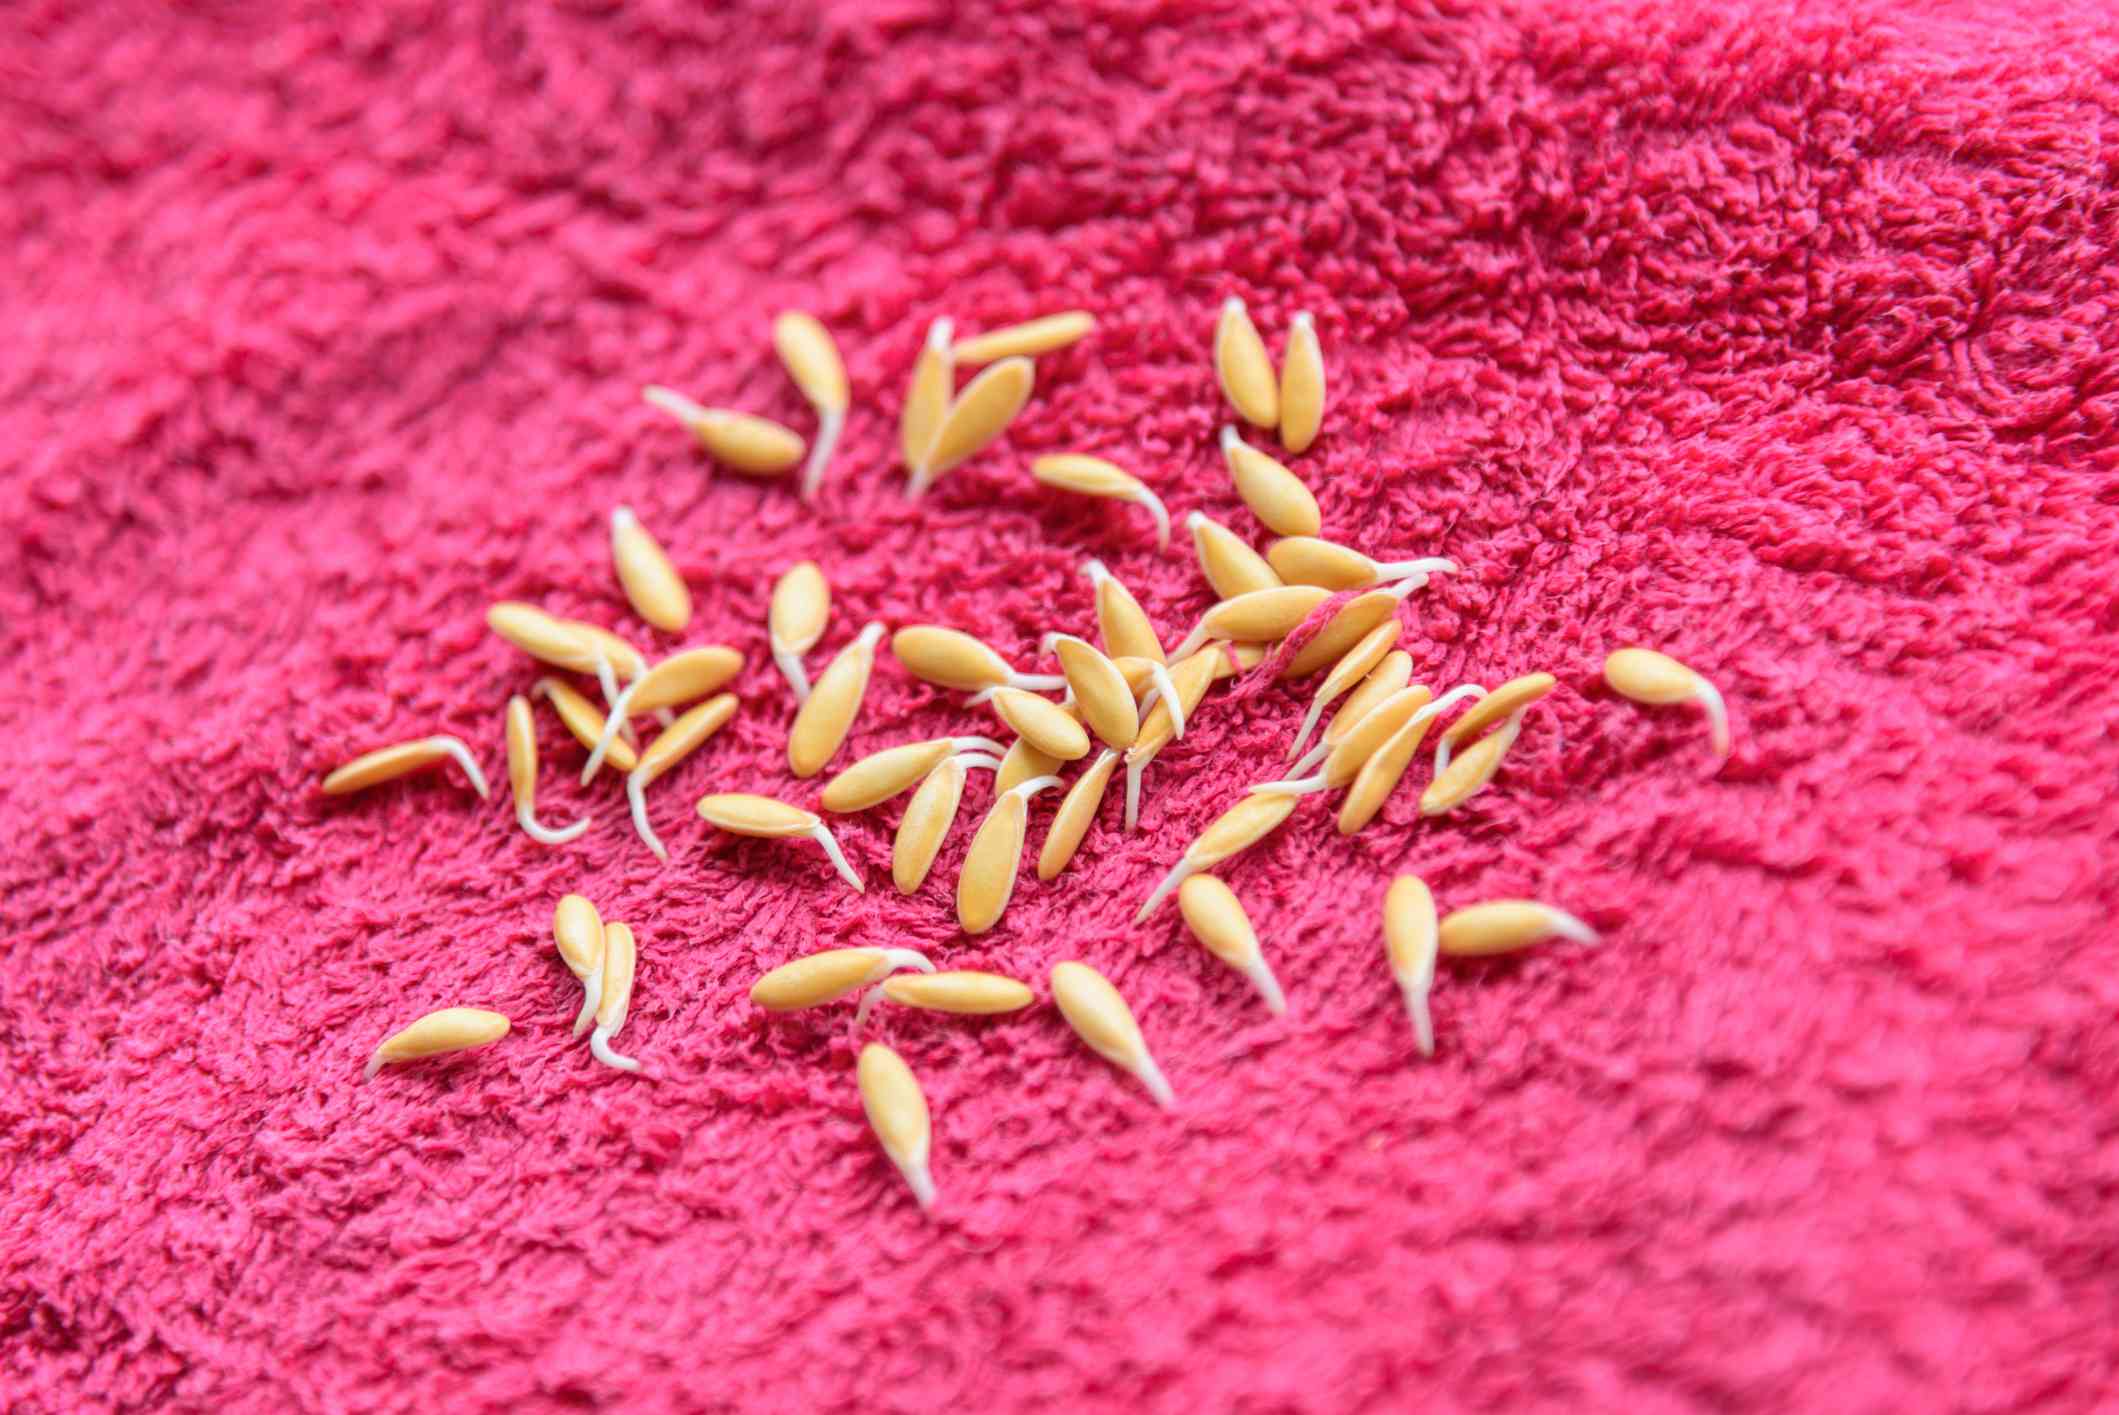 Semillas de melón germinadas en una toalla rosa